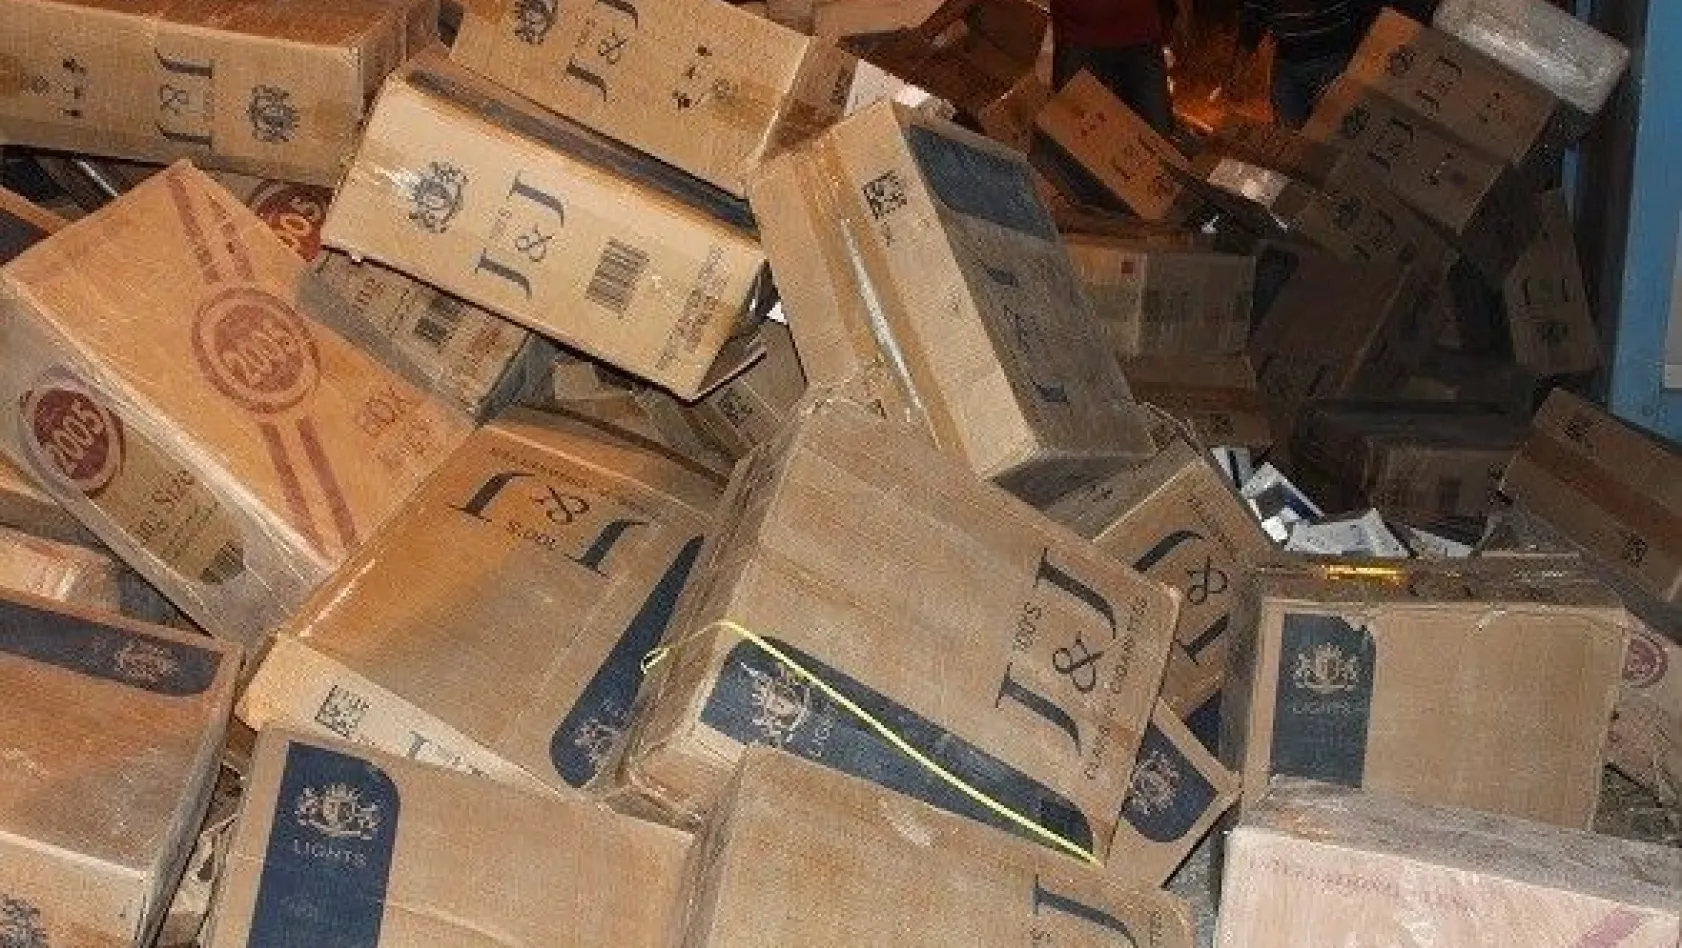 20 bin 300 paket kaçak sigarayla yakalanan Ukraynalı şoförden garip tepki